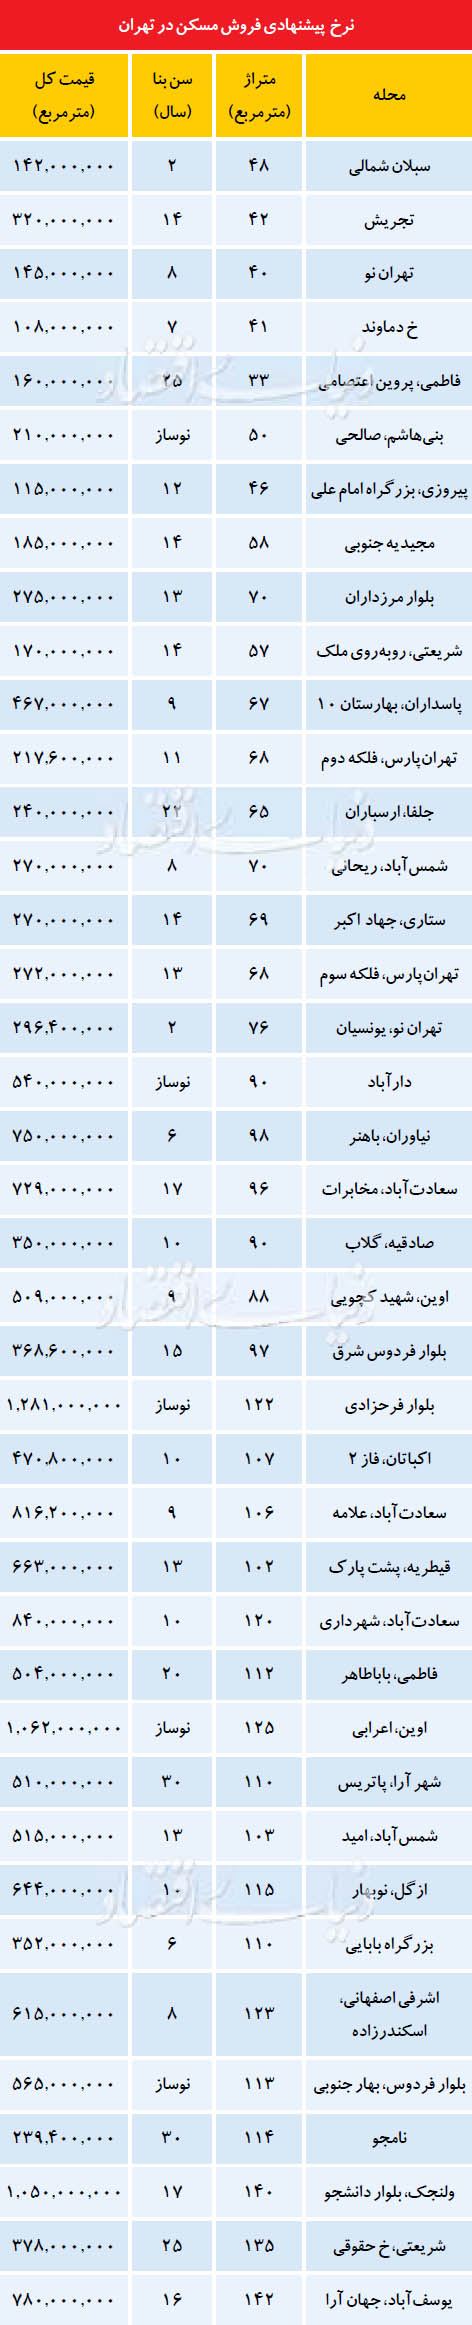 نرخ پیشنهادی فروش مسکن در تهران